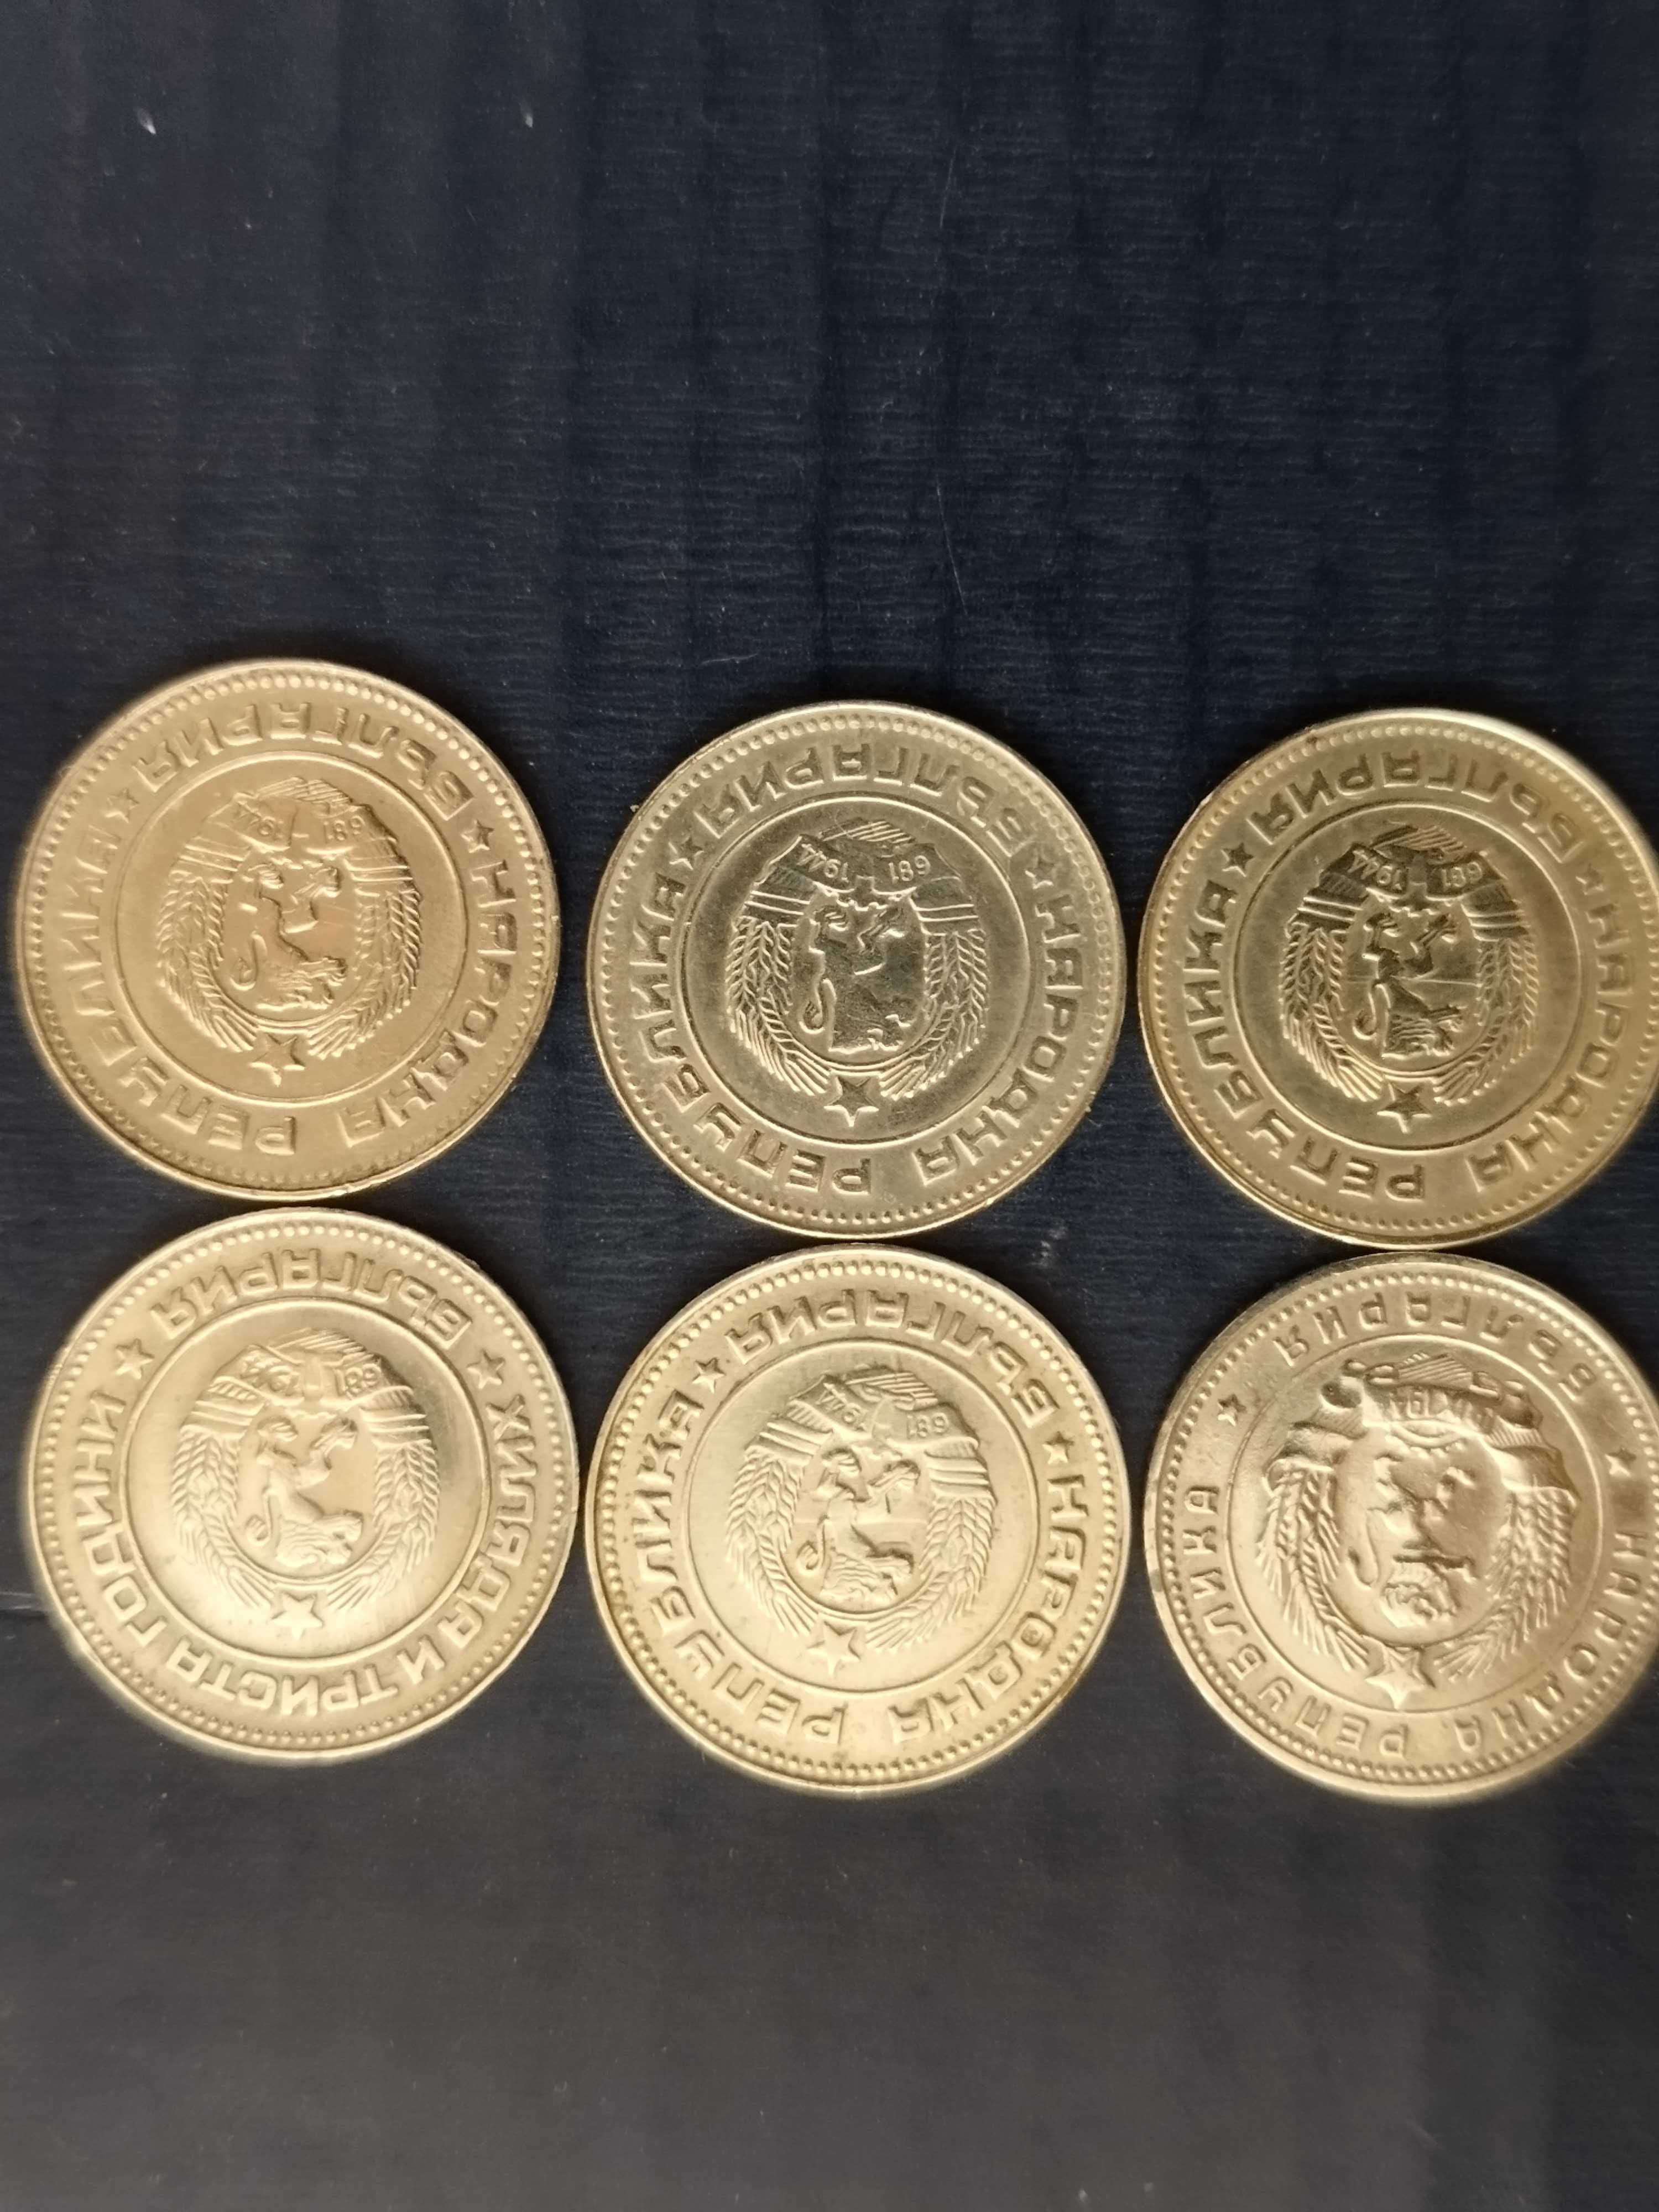 Български монети /лотове/ от 1,2,10,20 и 50ст /1954-1990/